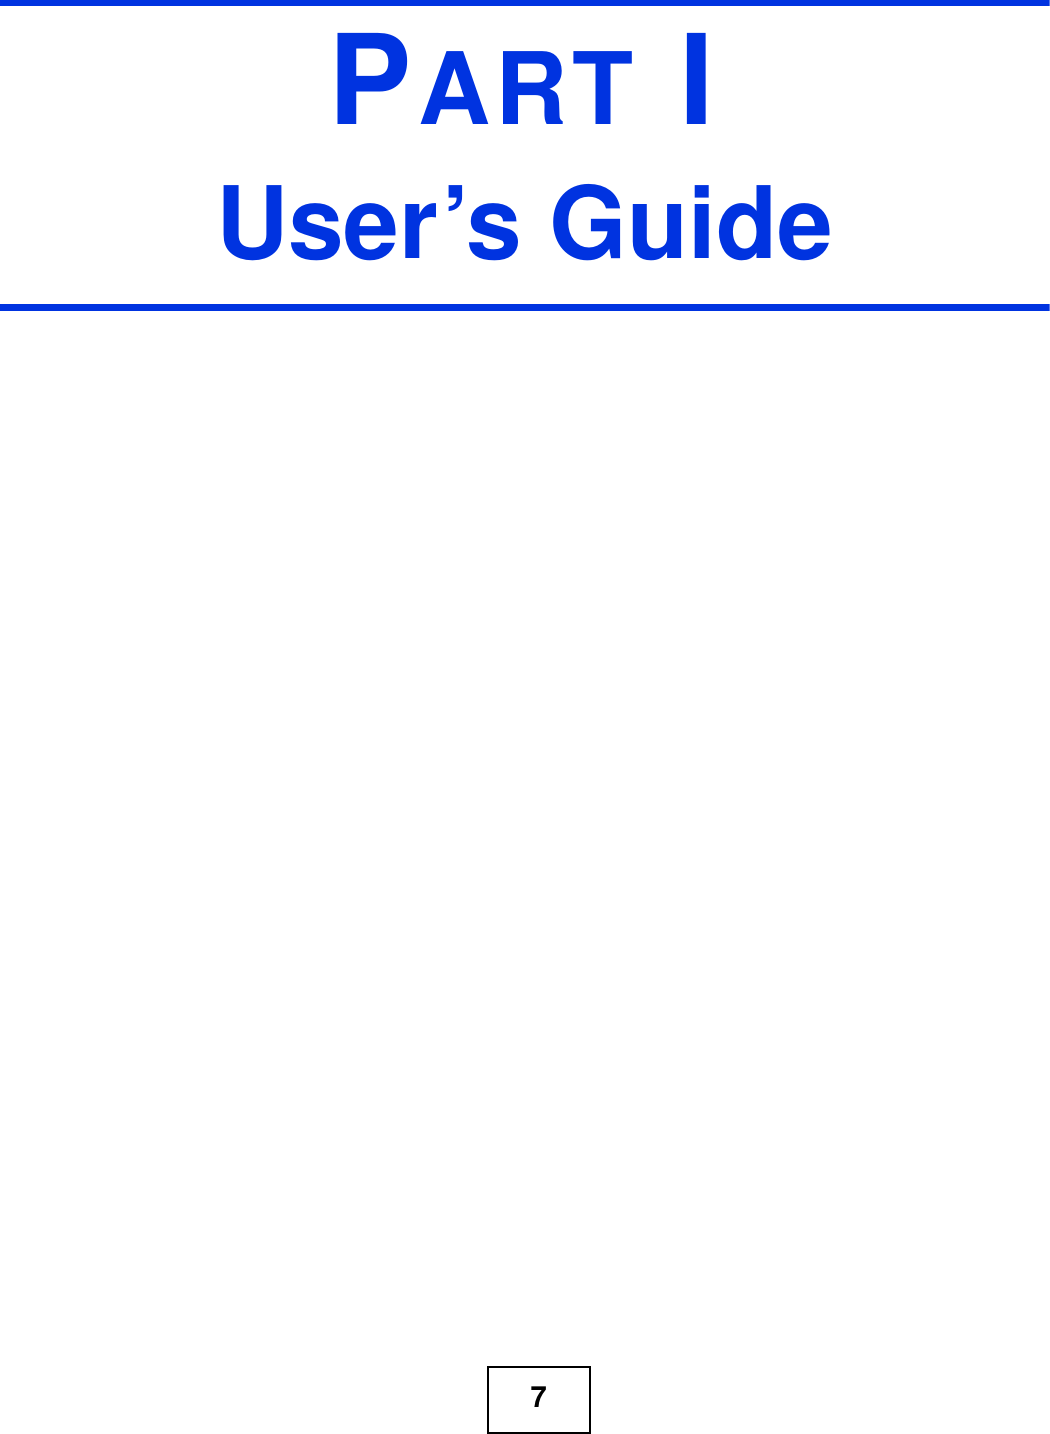 7PART IUser’s Guide 